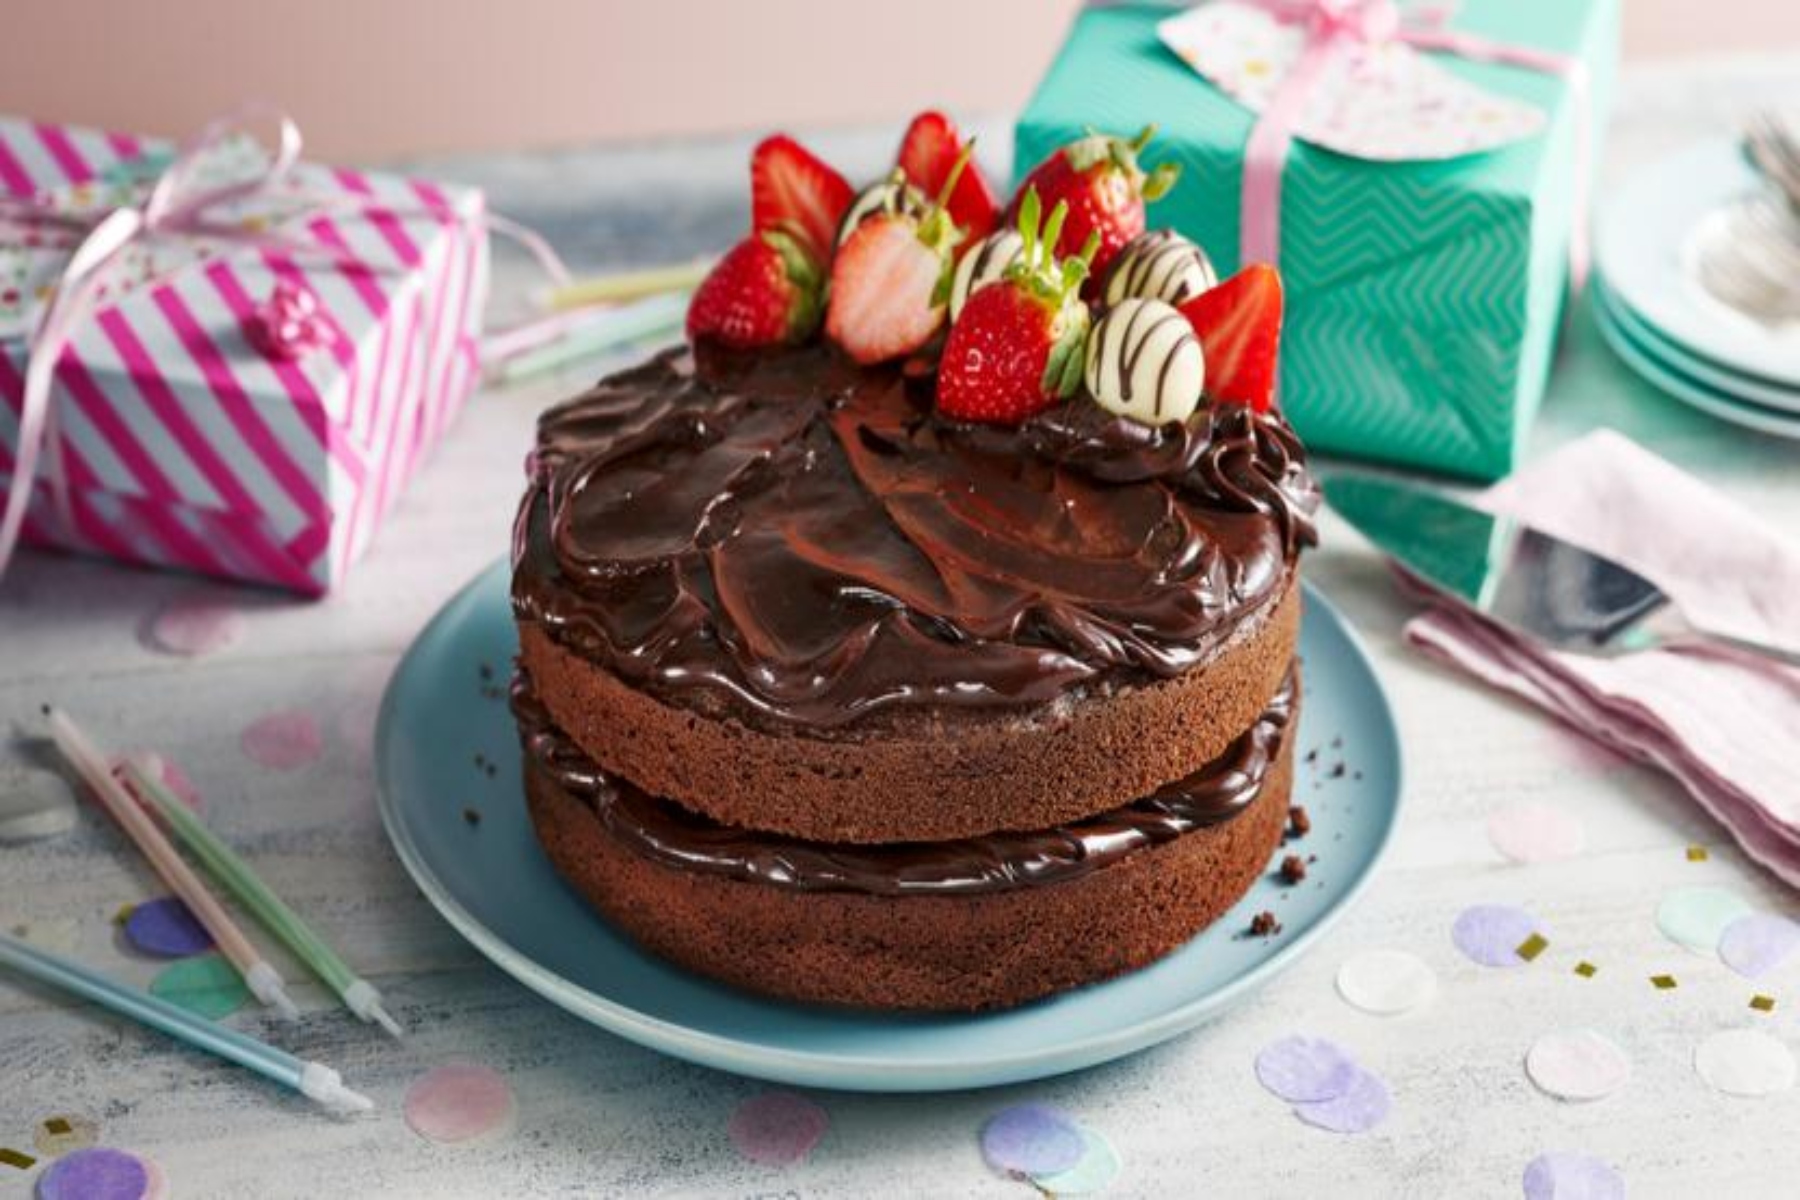 Τούρτα σοκολάτας: Μια πεντανόστιμη τούρτα σοκολάτας έτοιμη σε 25 λεπτά